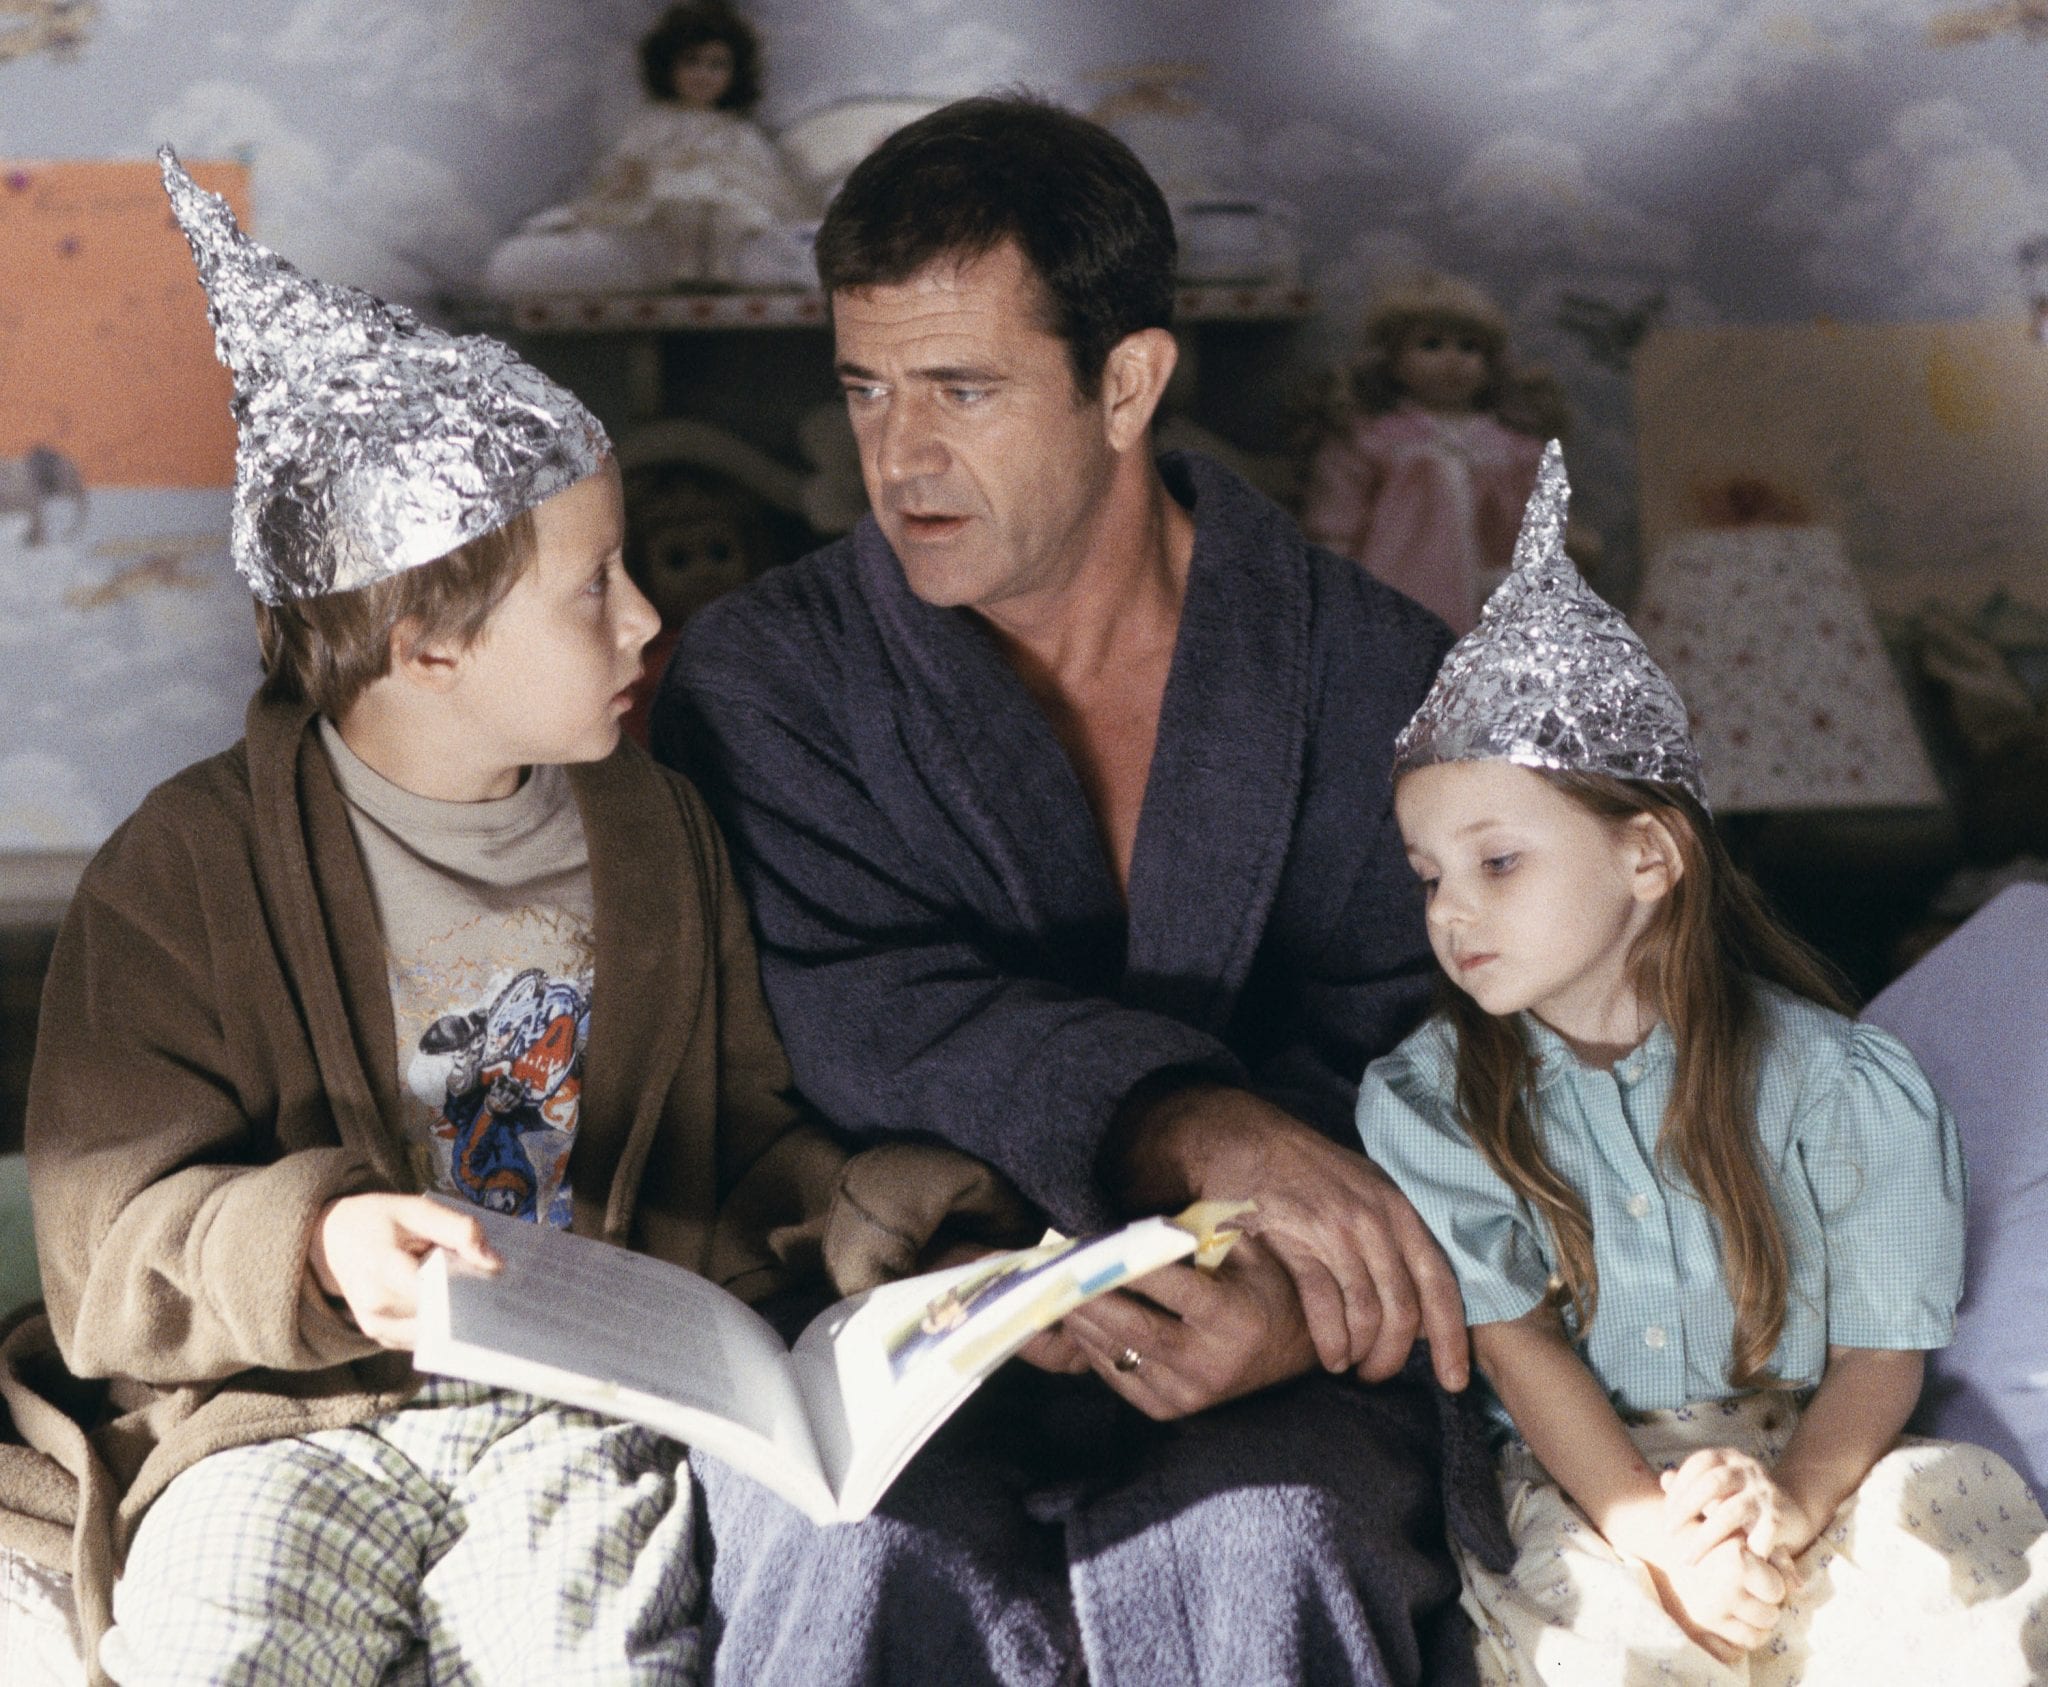 Los hijos del personaje interpretado por Mel Gibson intentan protegerse de los alienígenas con cascos de papel de aluminio, en 'Señales', la película de M. Night Shyamalan.